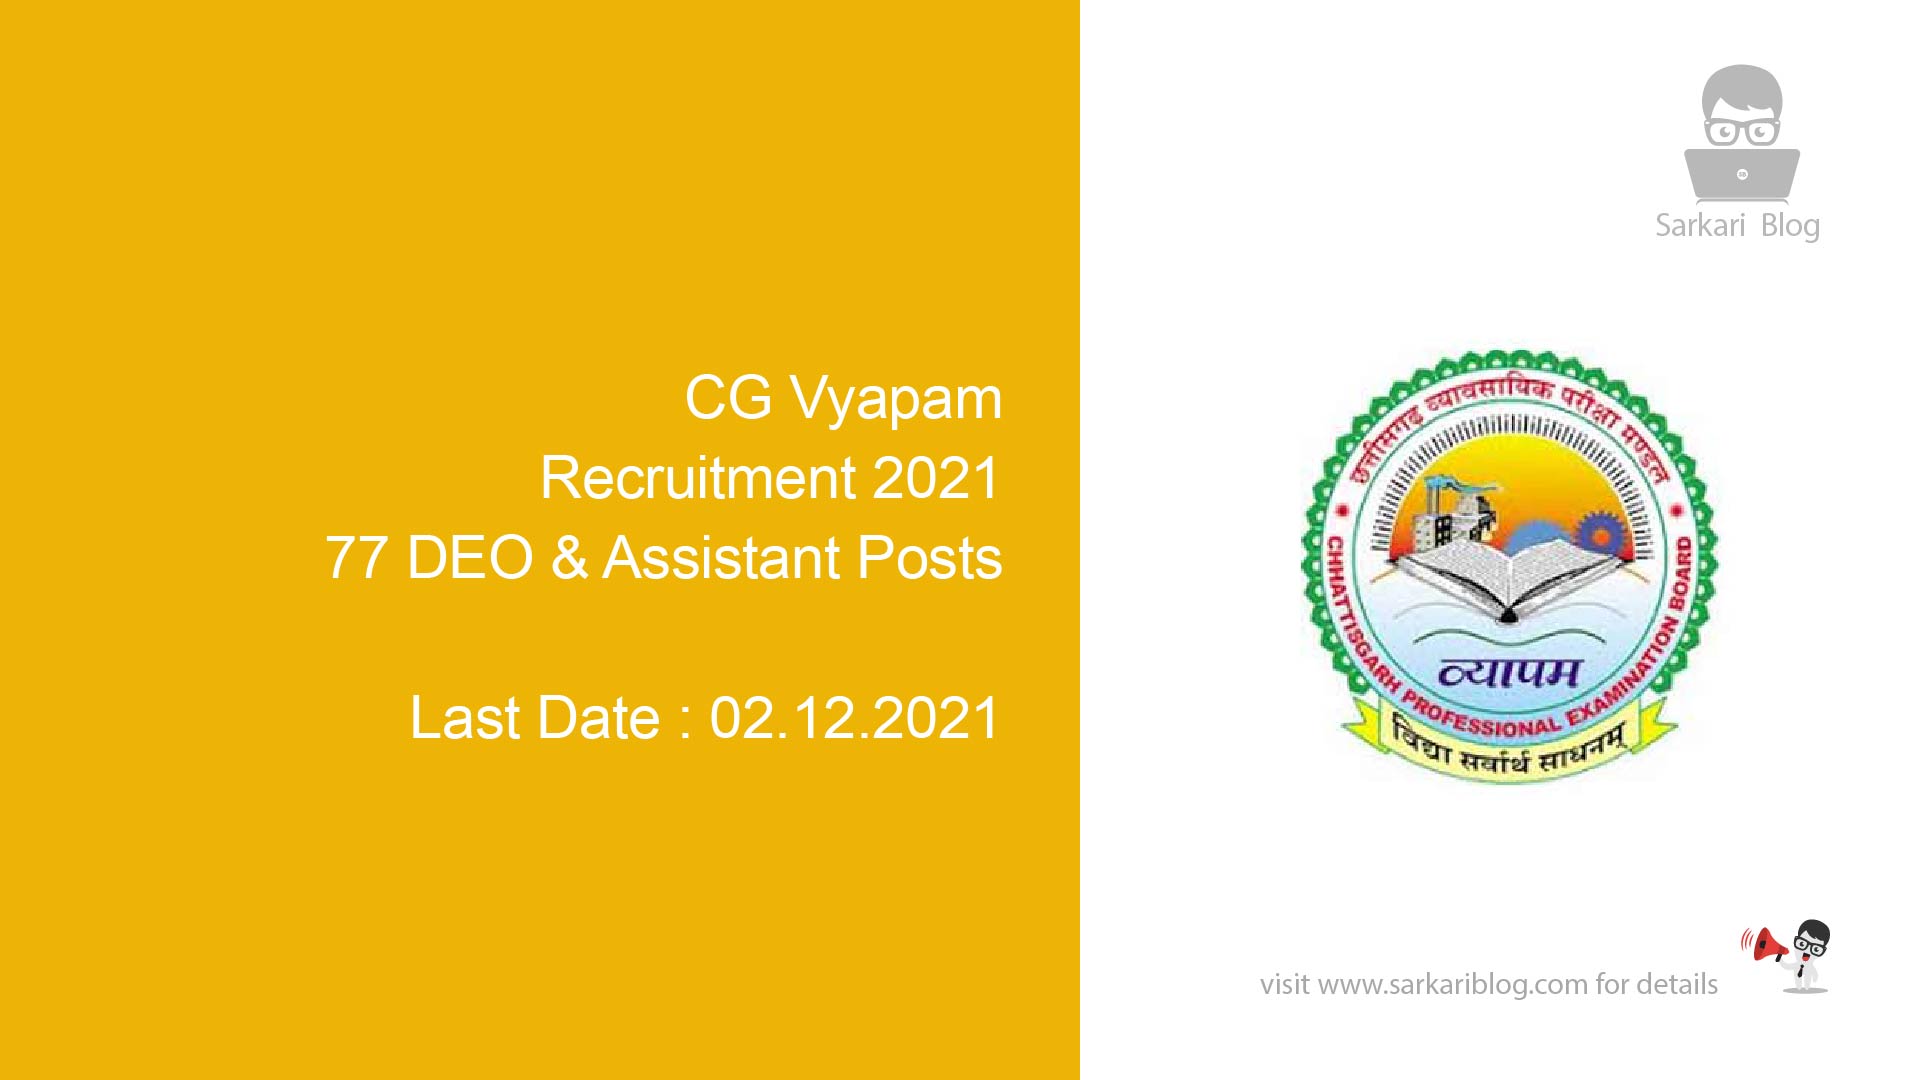 CG Vyapam Recruitment 2021